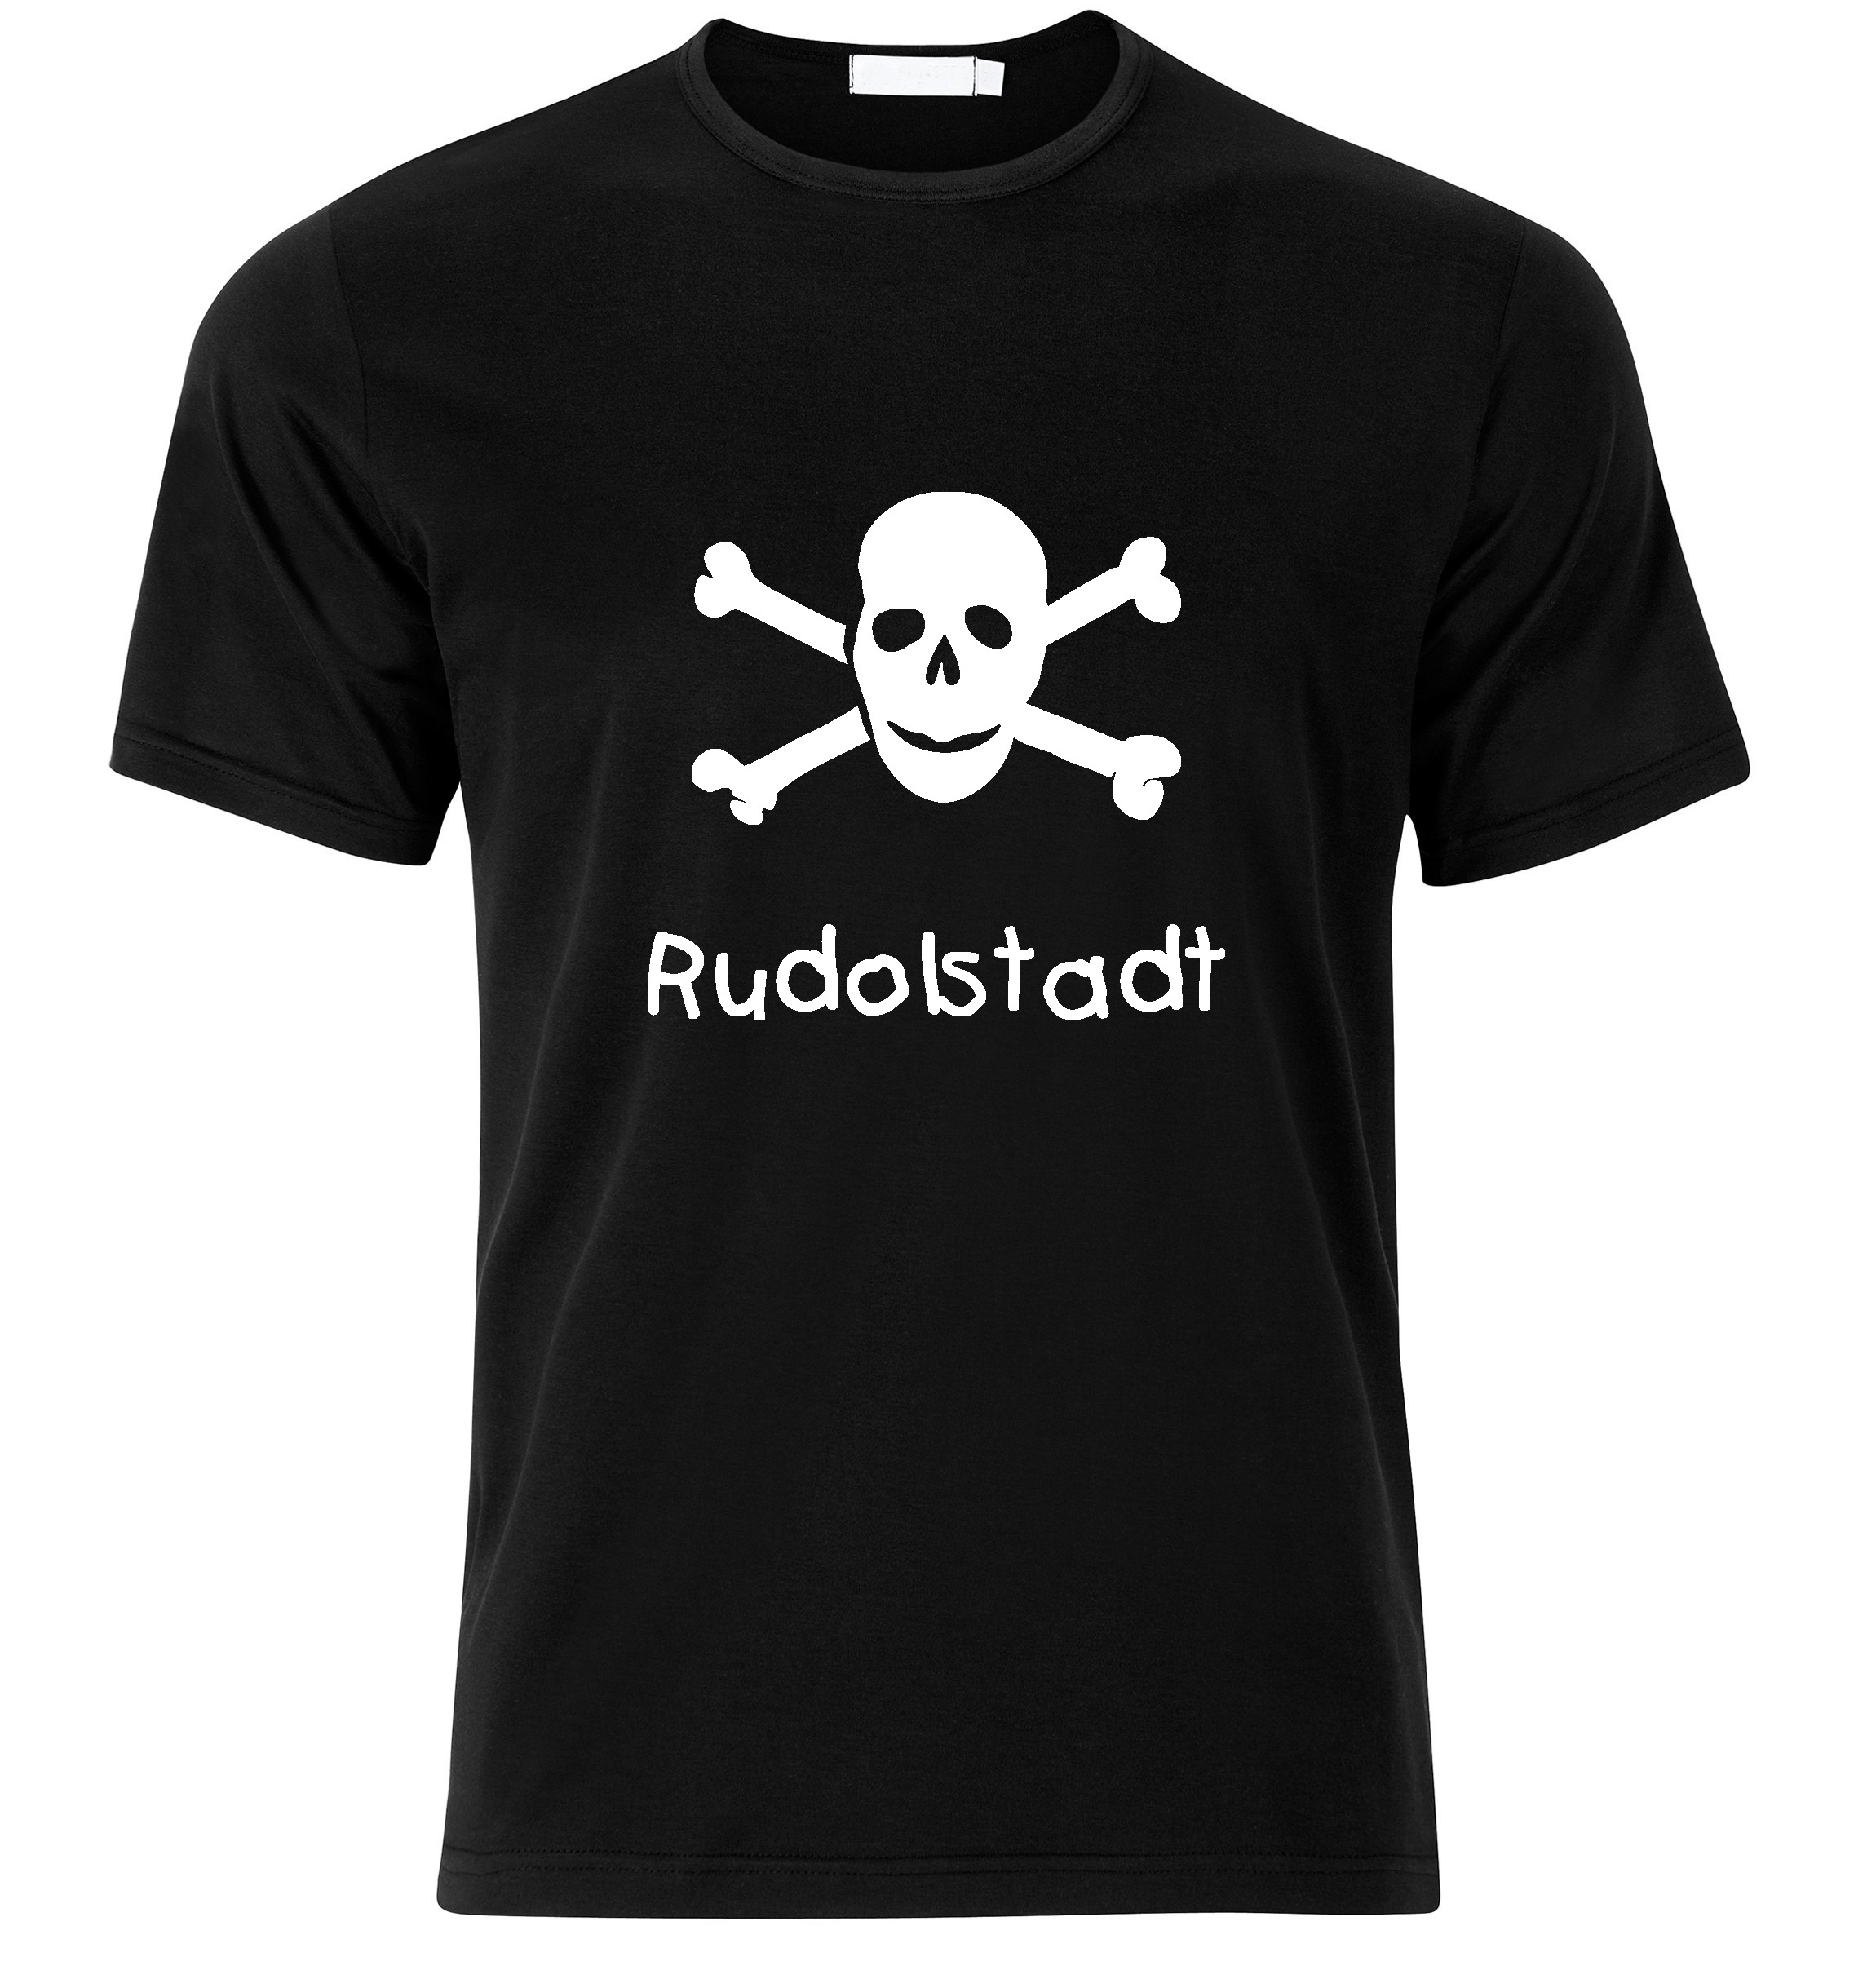 T-Shirt Rudolstadt Jolly Roger, Totenkopf